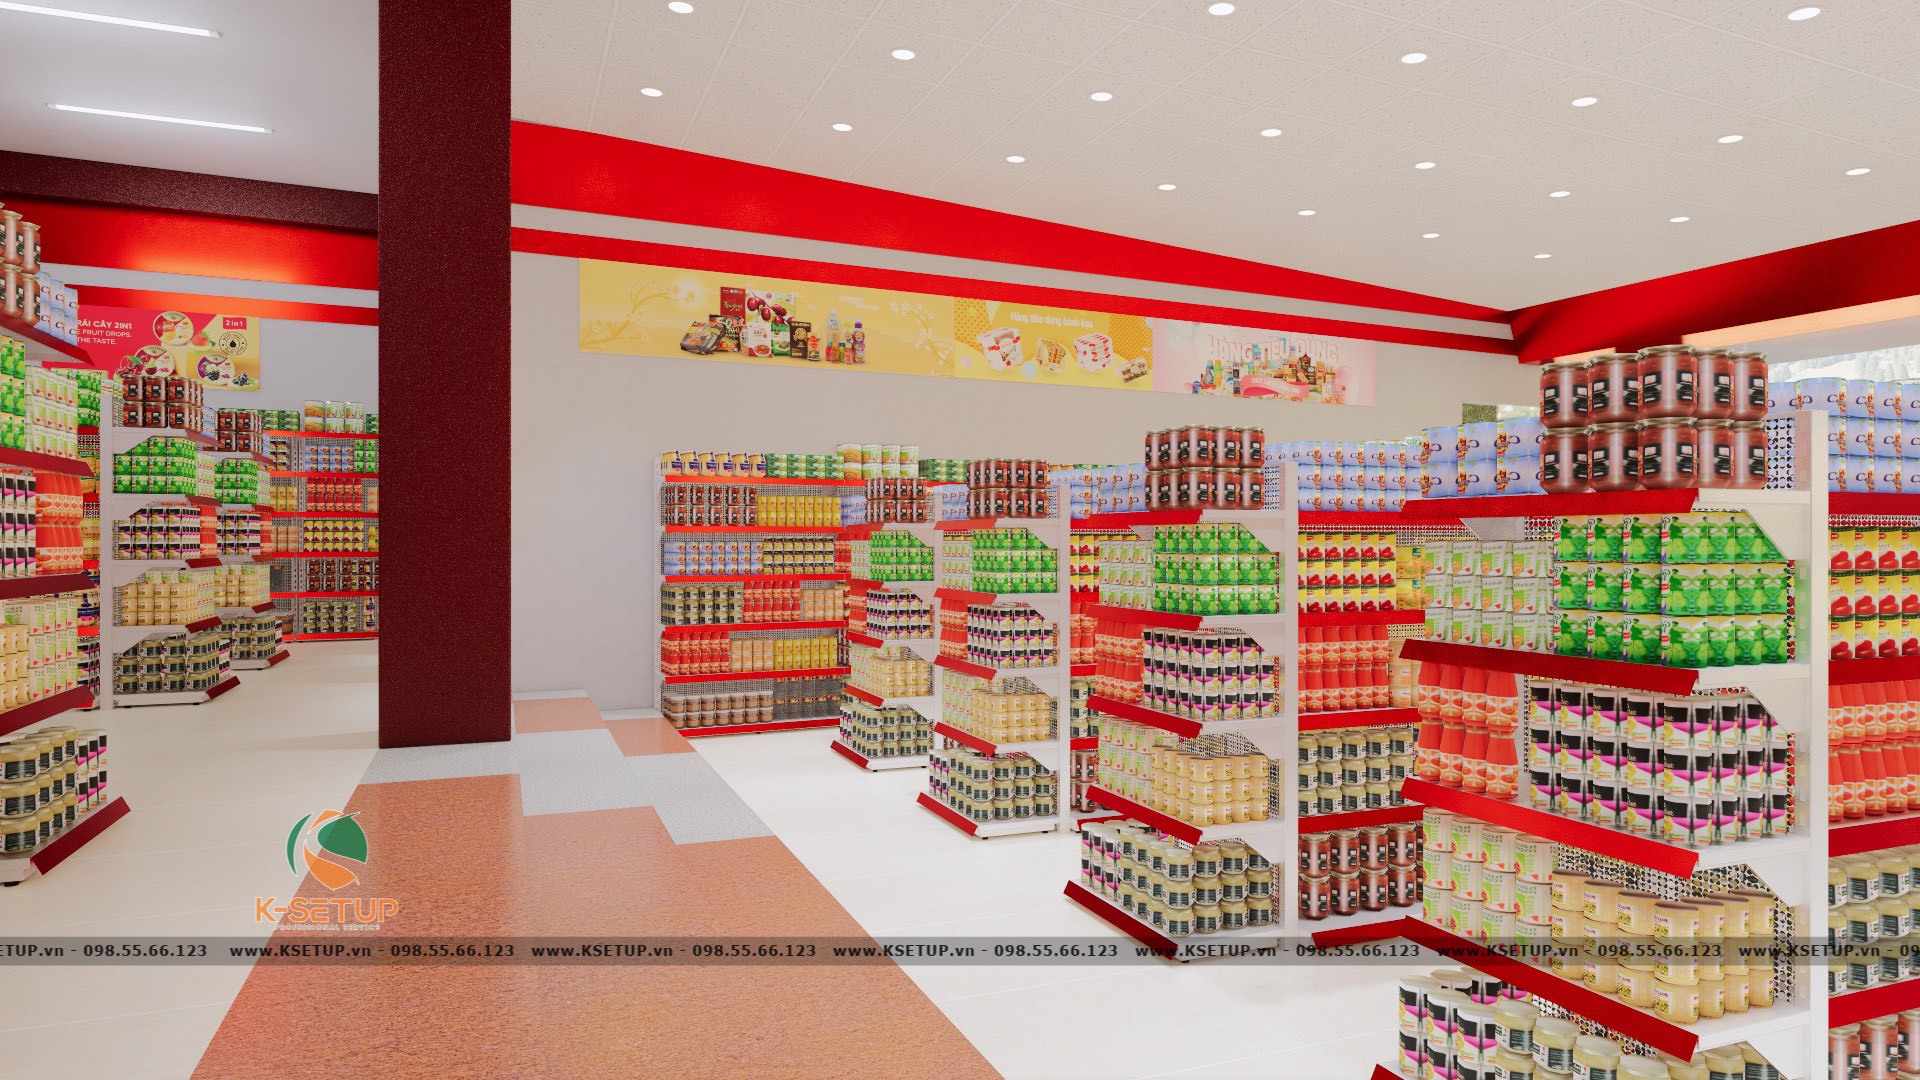 Thiết kế siêu thị mini 2 tầng cần đảm bảo nhiều tiêu chuẩn.